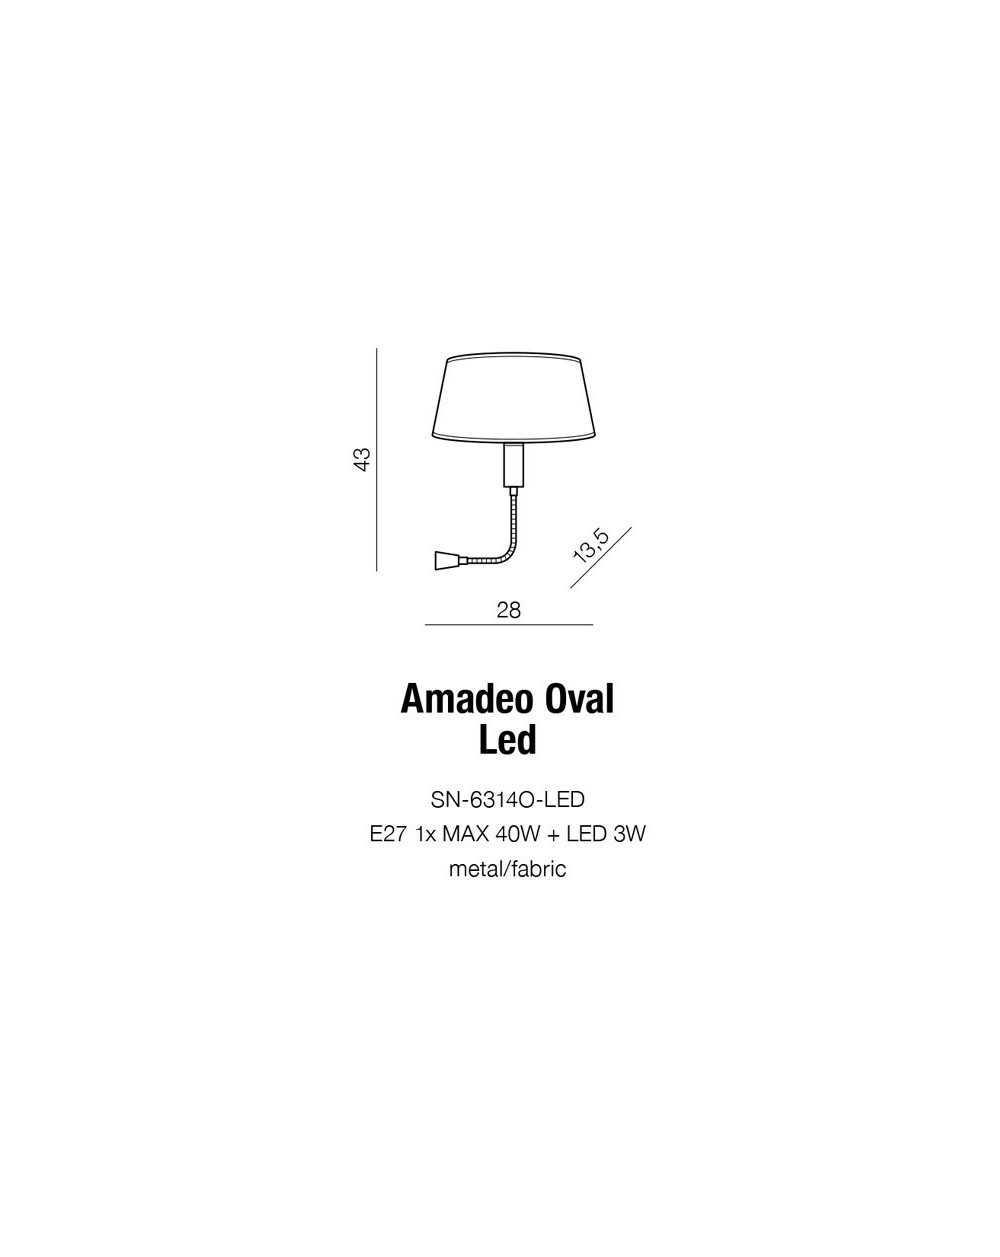 AMADEO OVAL WHITE + 3W LED